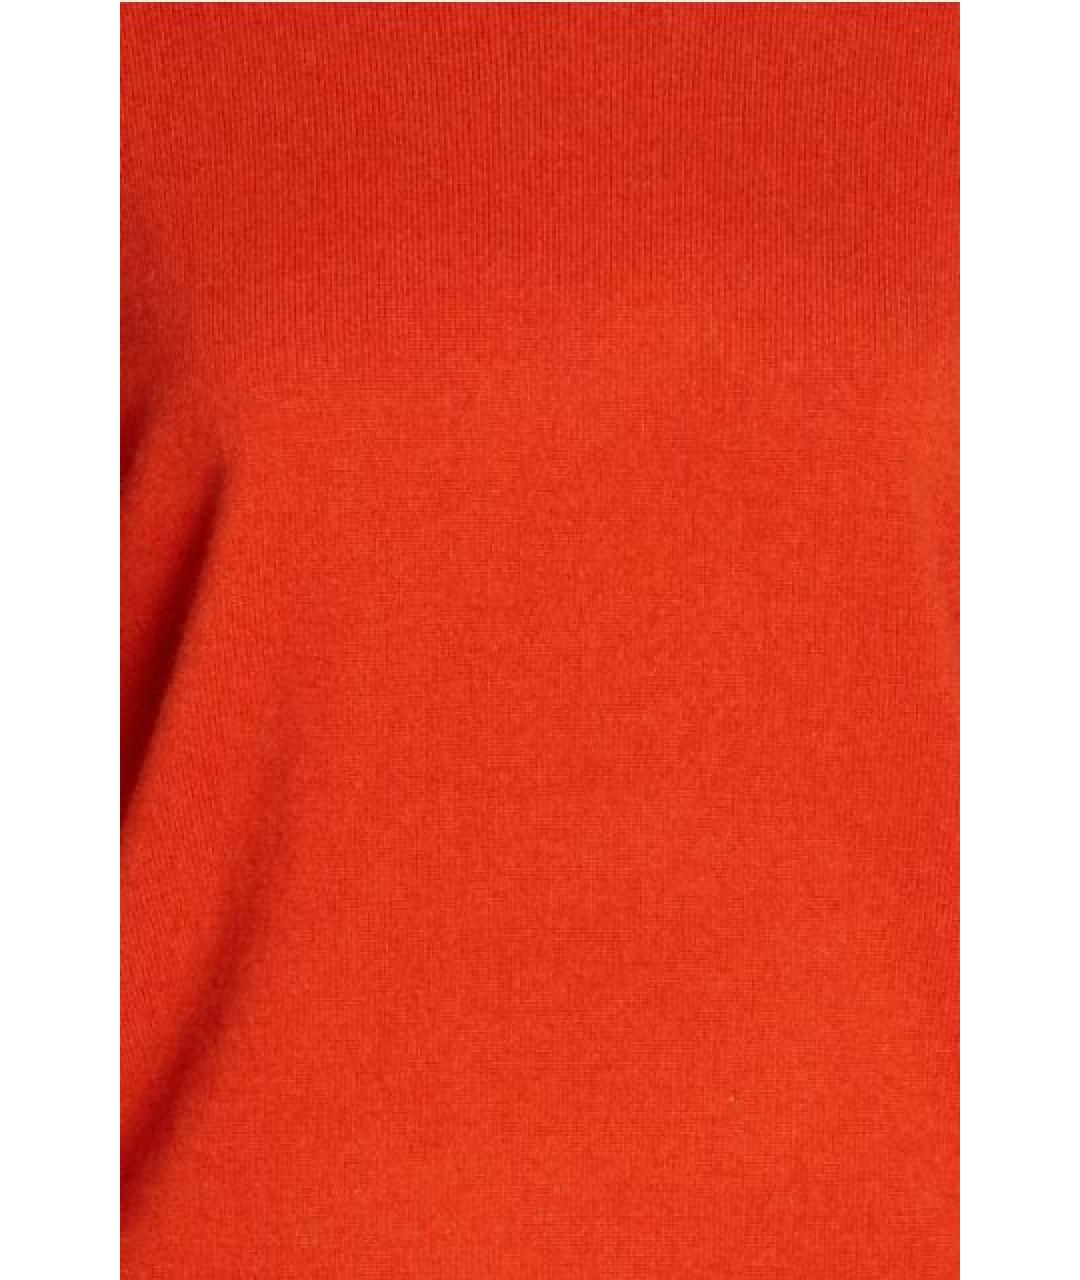 N.PEAL Красный кашемировый джемпер / свитер, фото 4